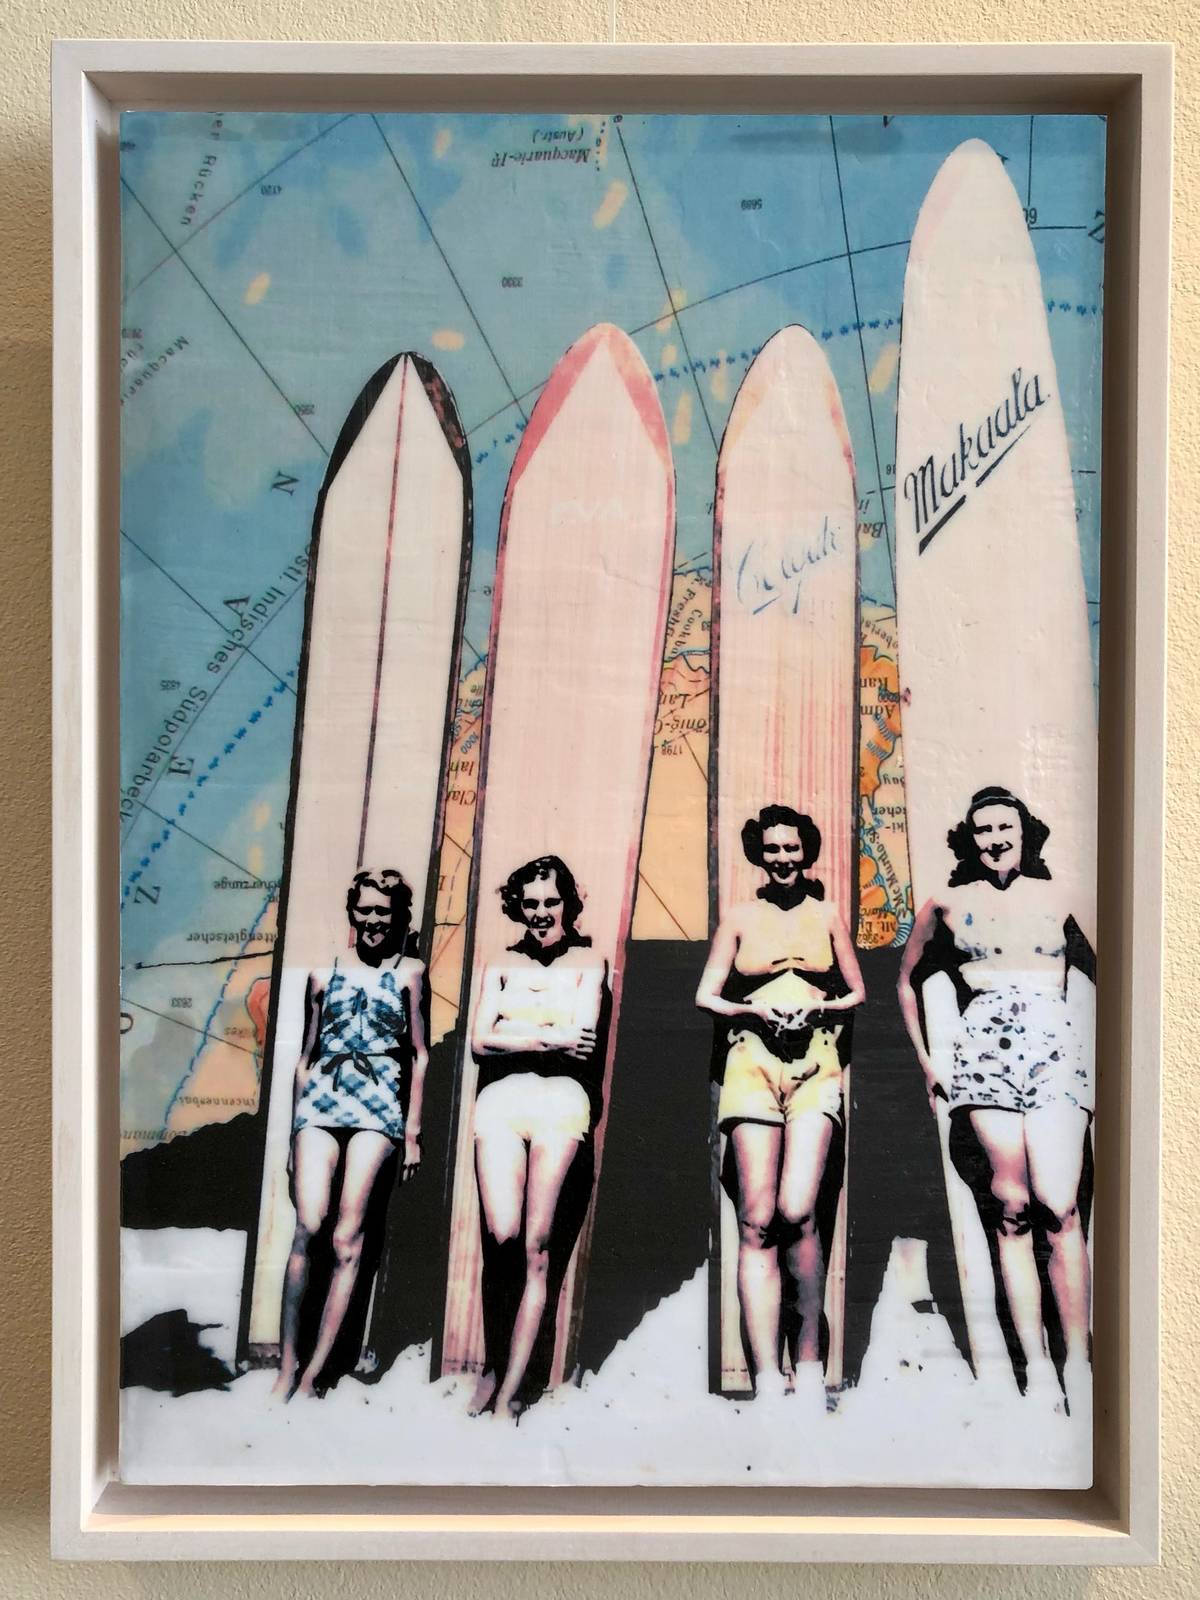 NewingerART: "Surfergirls" (Agnete Sabbagh, 2021)